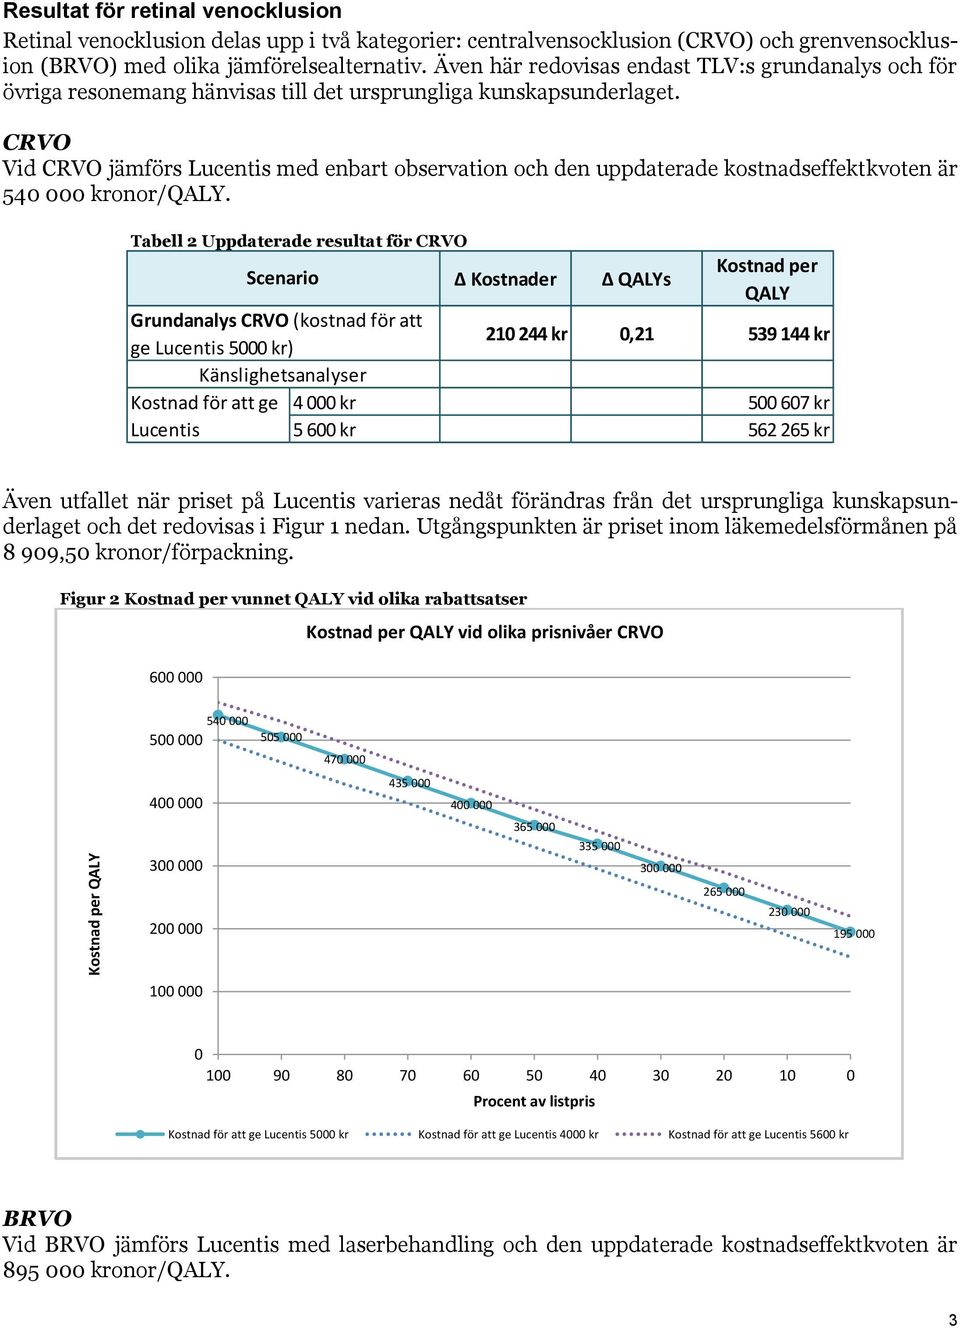 CRVO Vid CRVO jämförs Lucentis med enbart observation och den uppdaterade kostnadseffektkvoten är 540 000 kronor/qaly.